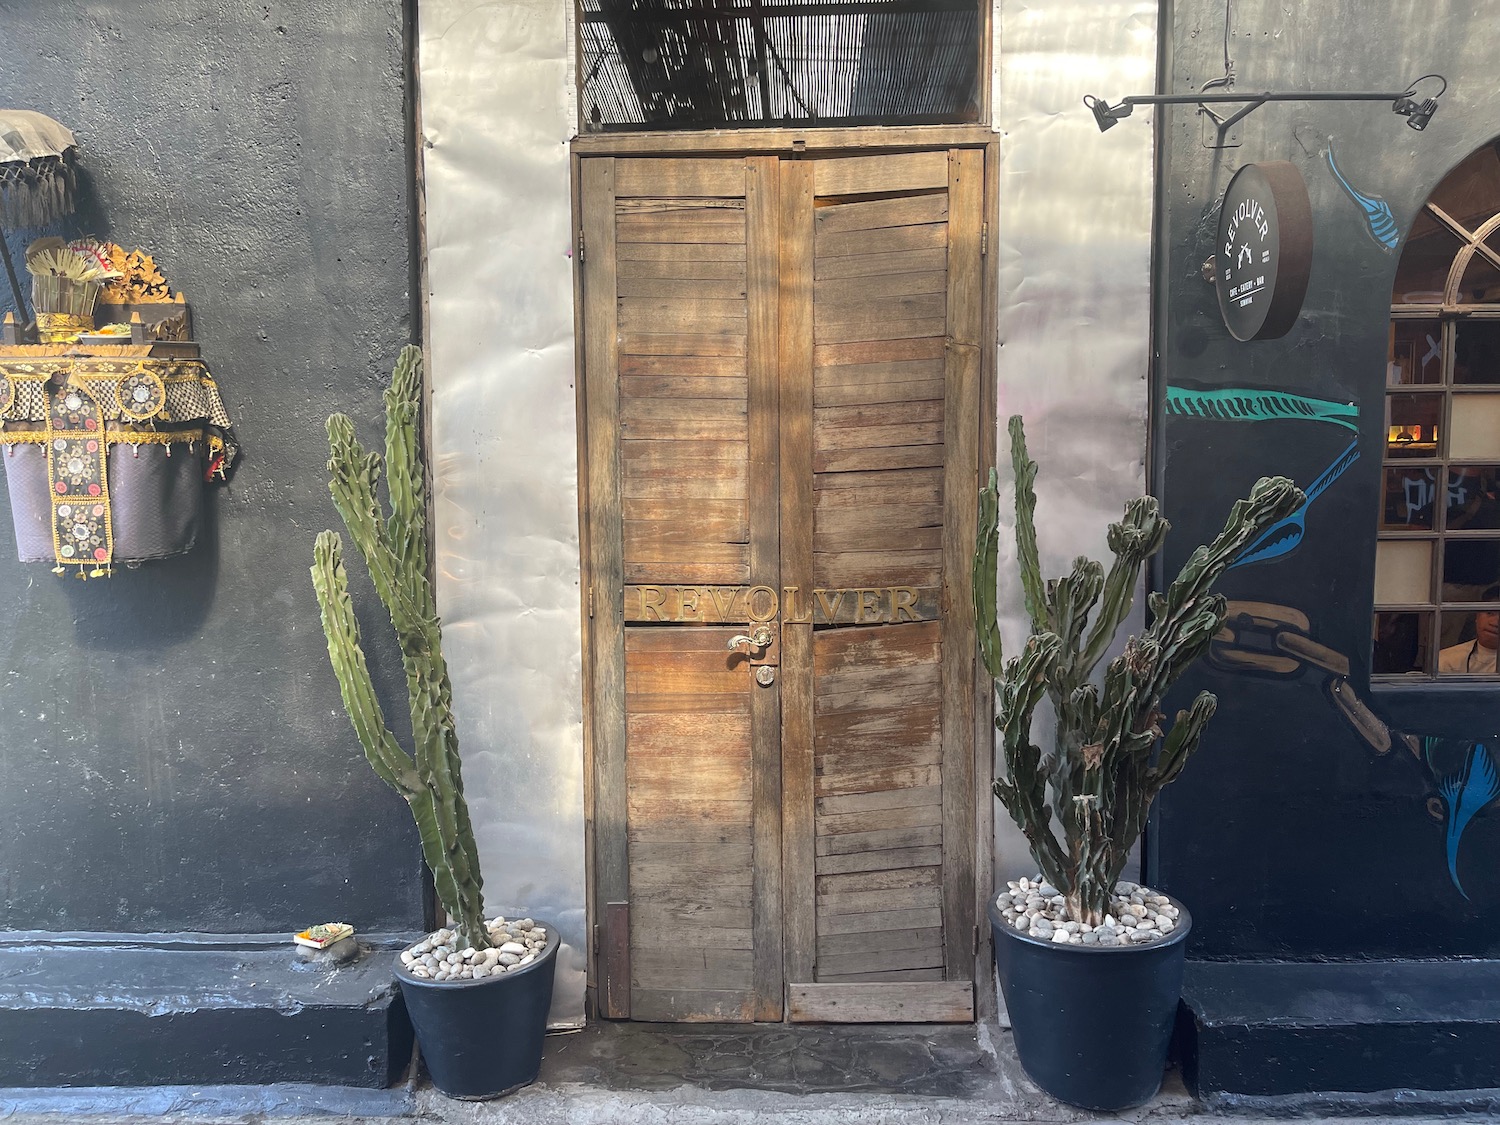 a wooden door with cactus in pots